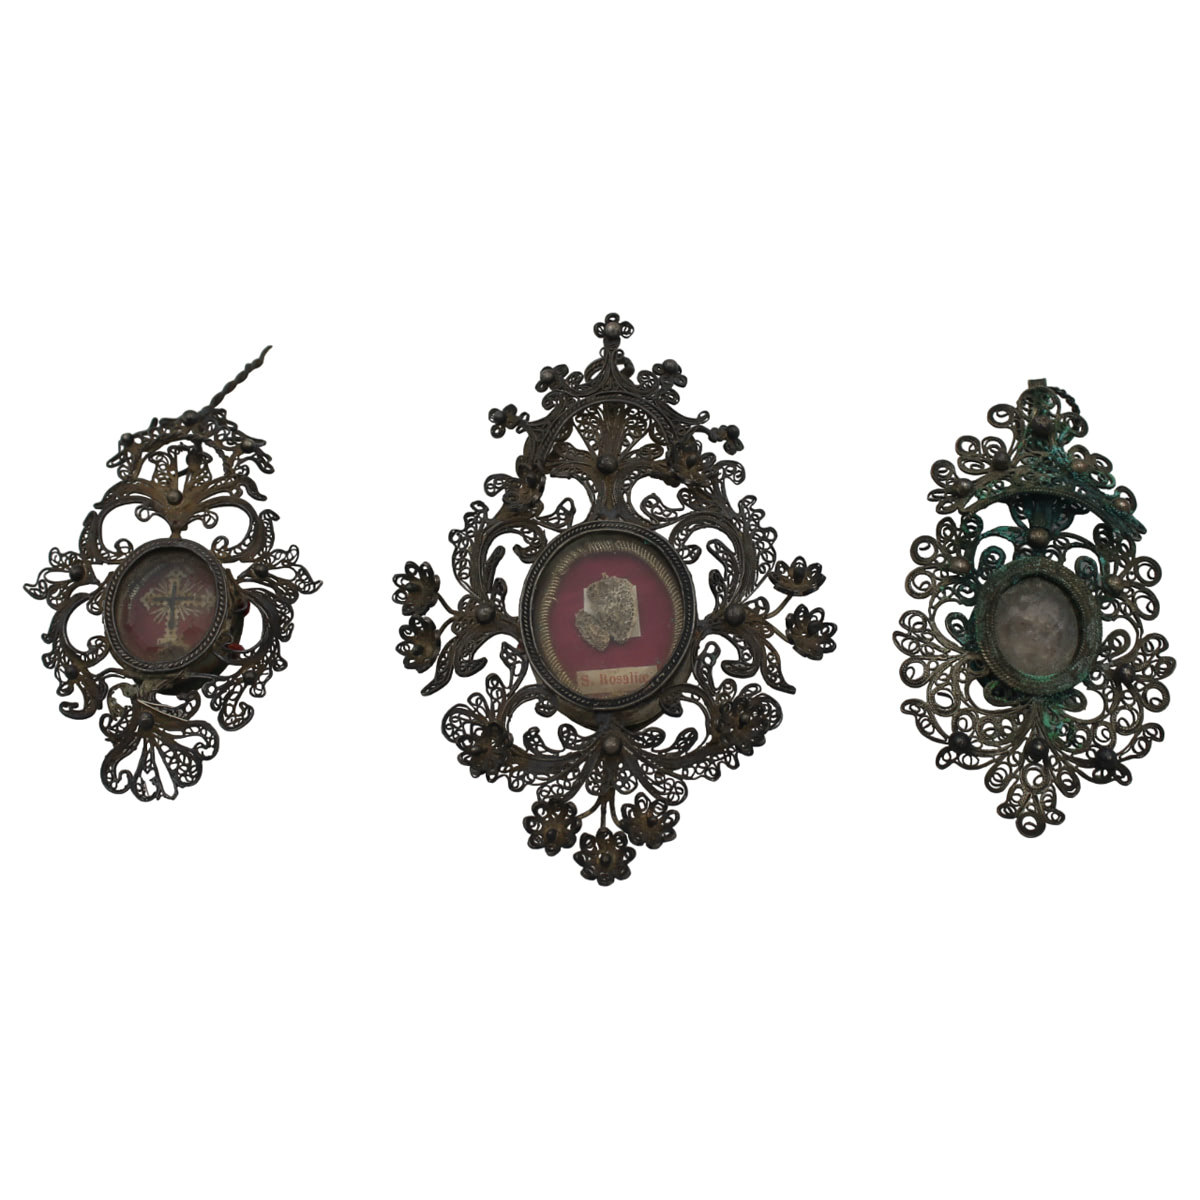 Tre piccole reliquie - Three small relics